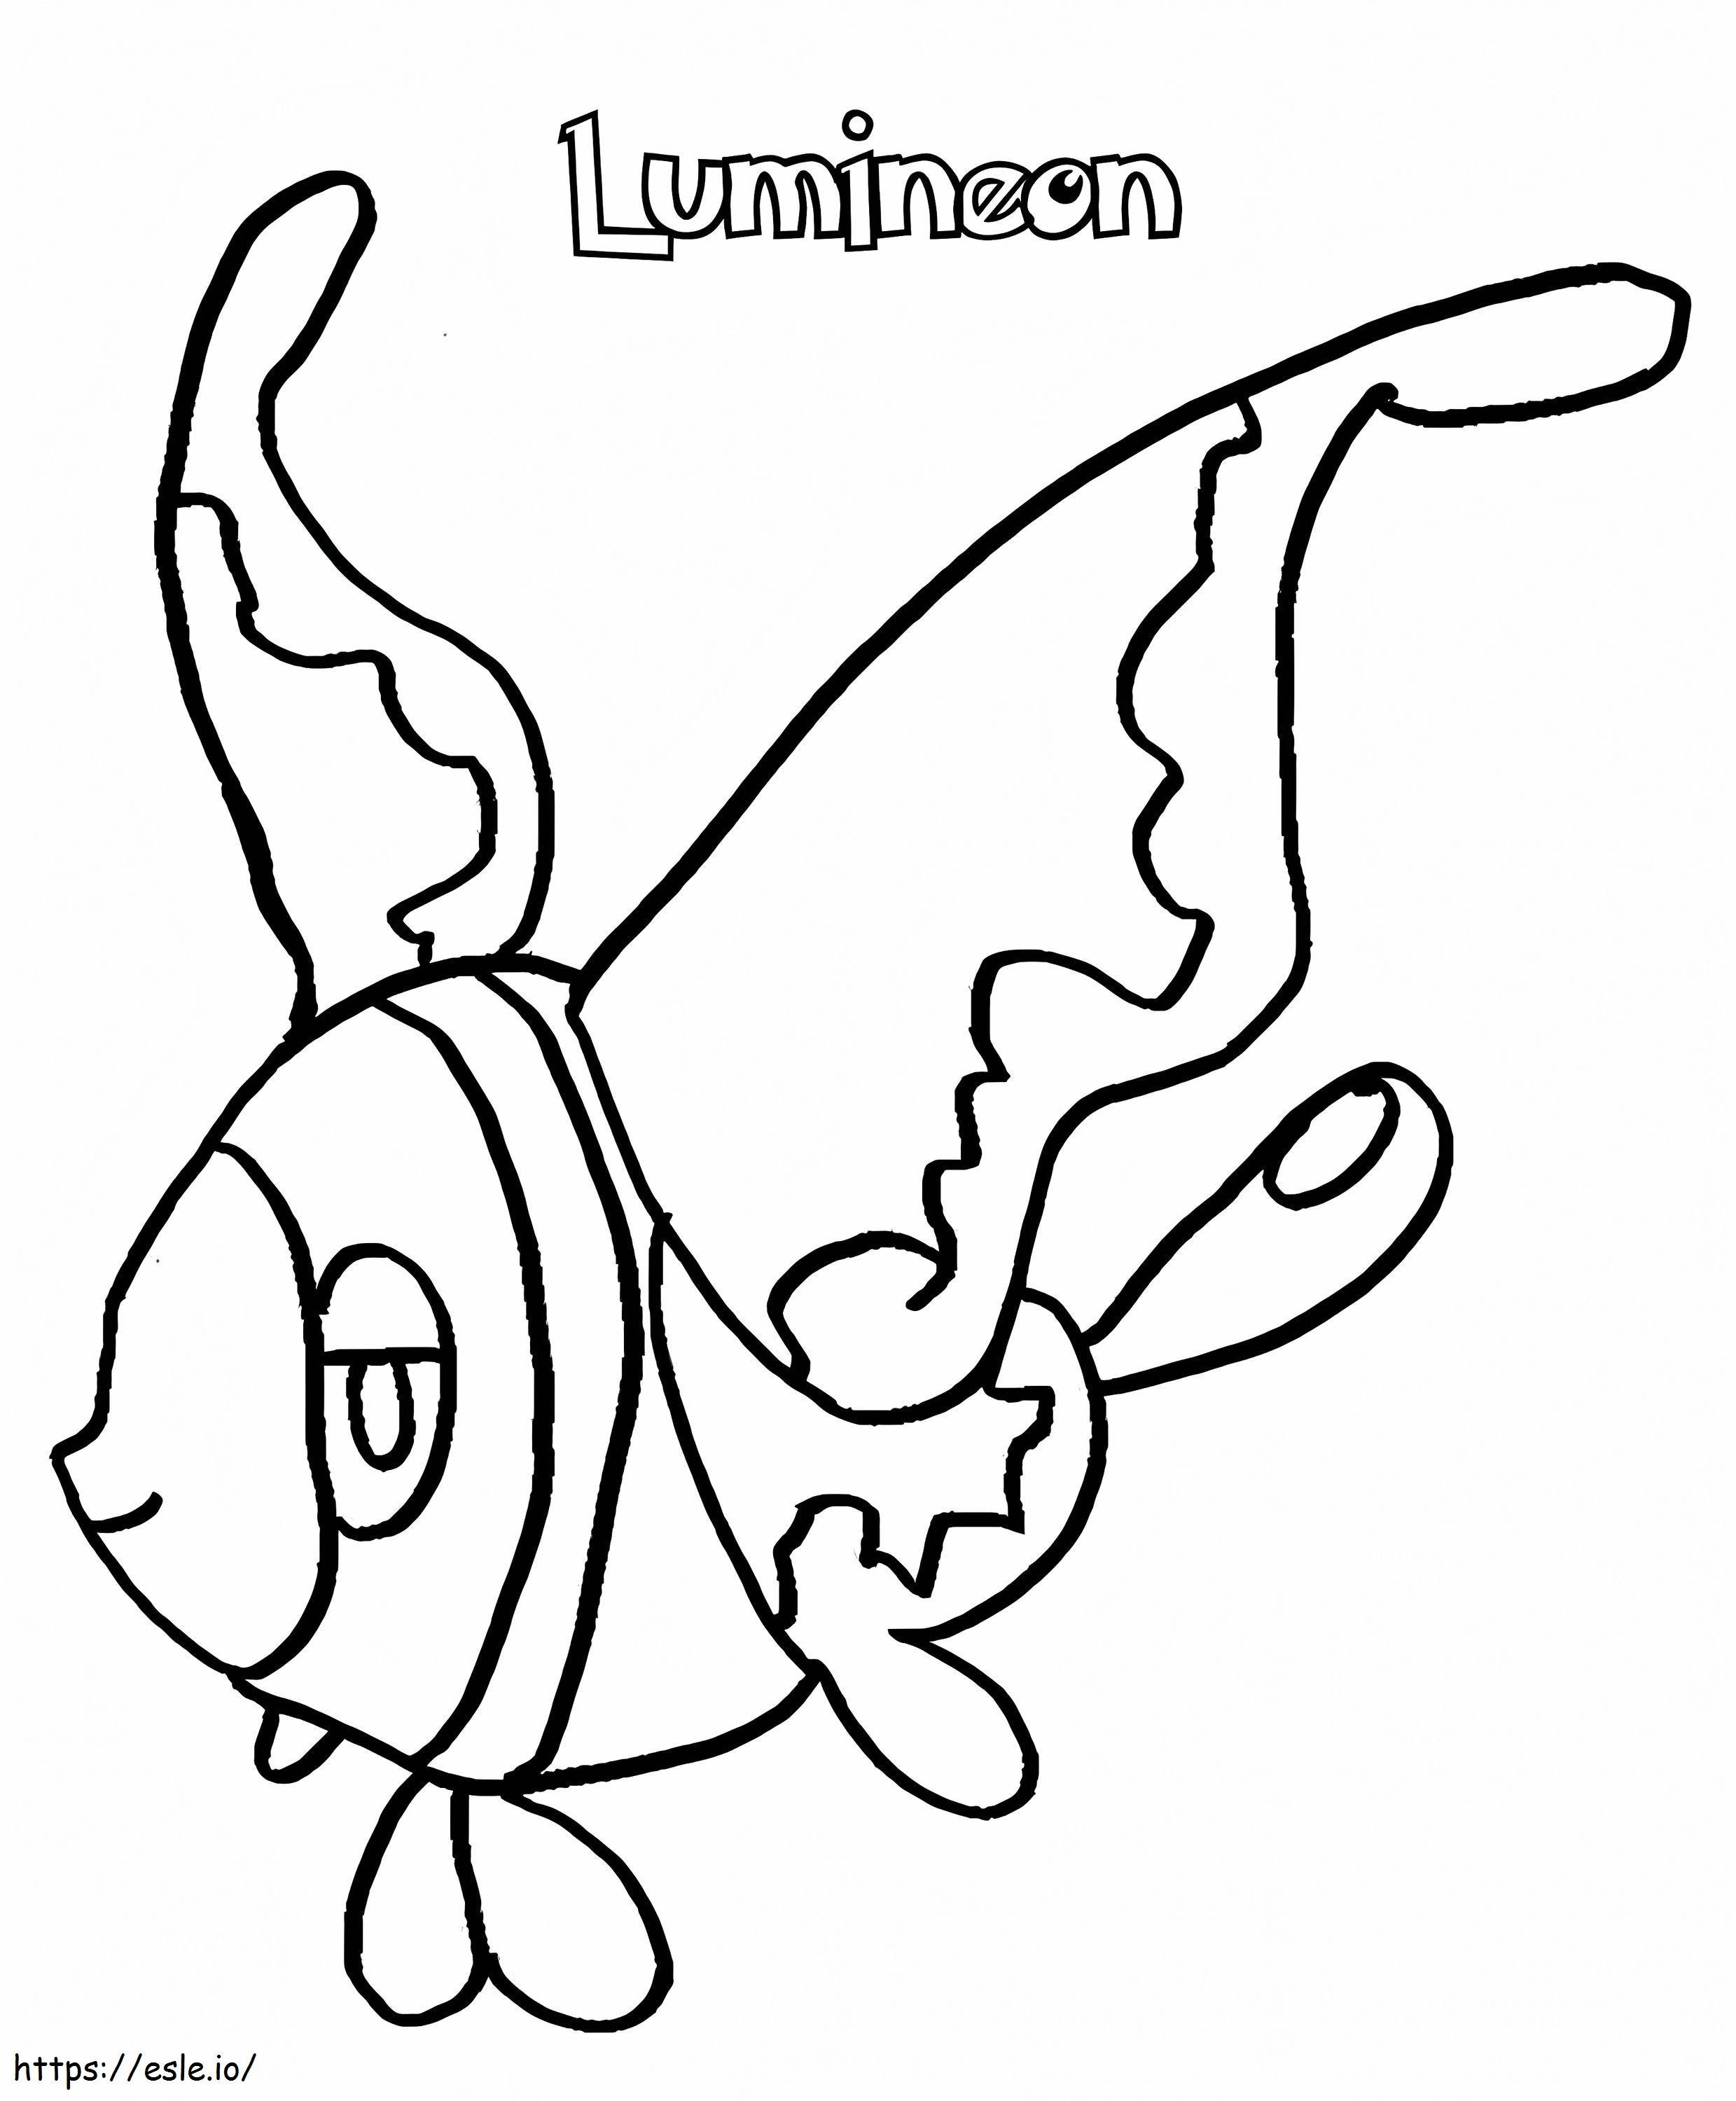 Coloriage Pokémon Lumineon Gen 4 à imprimer dessin